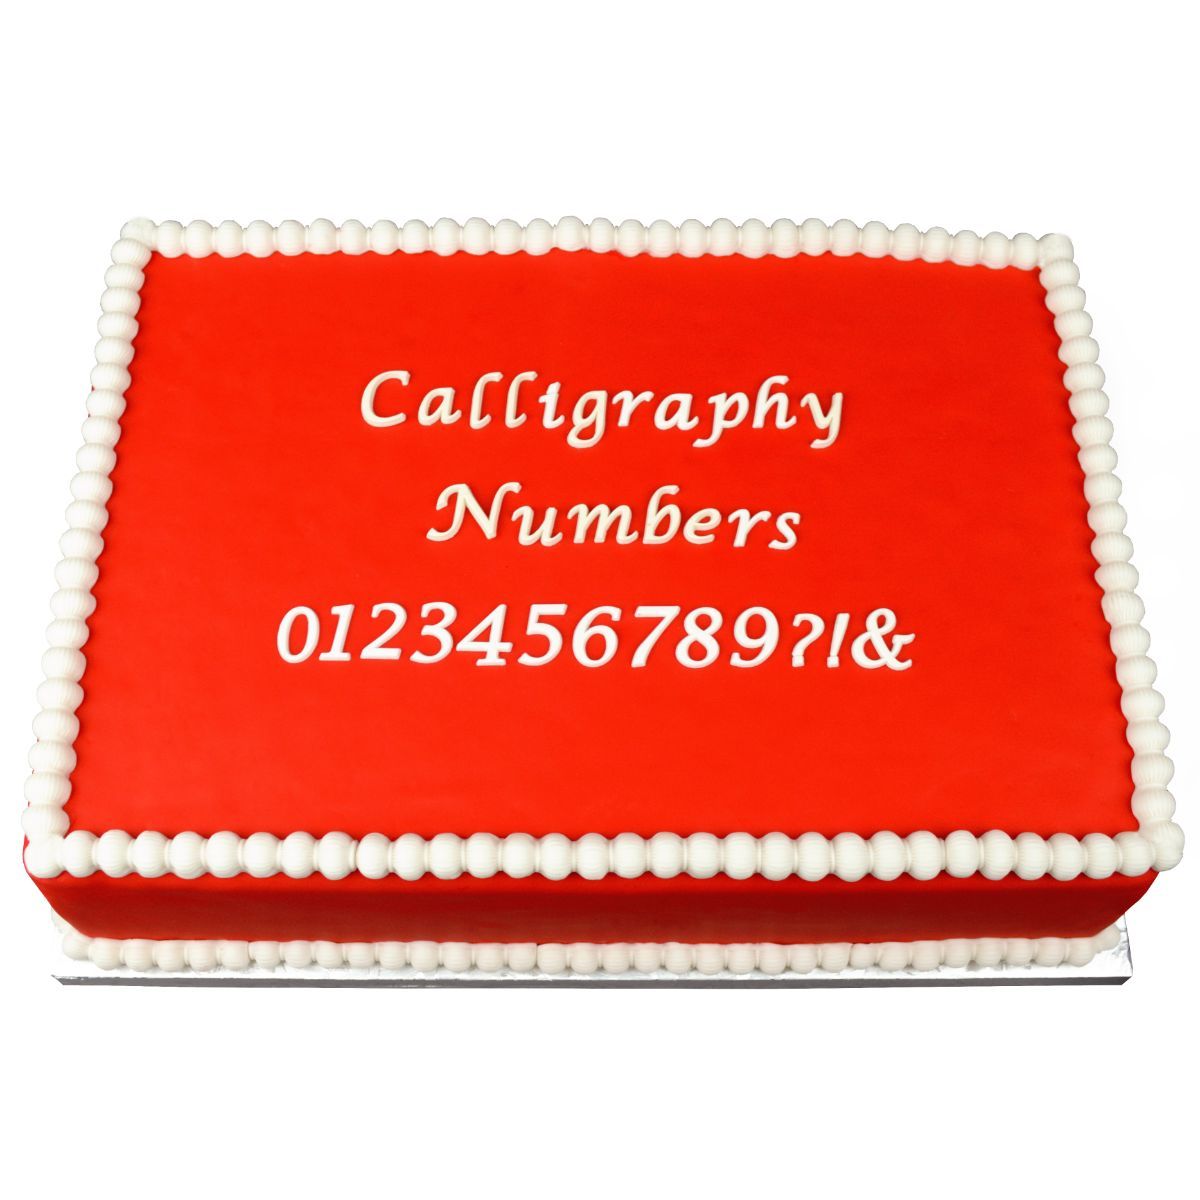 Calligraphy Numbers Flexabet™ Mold - Bake Supply Plus